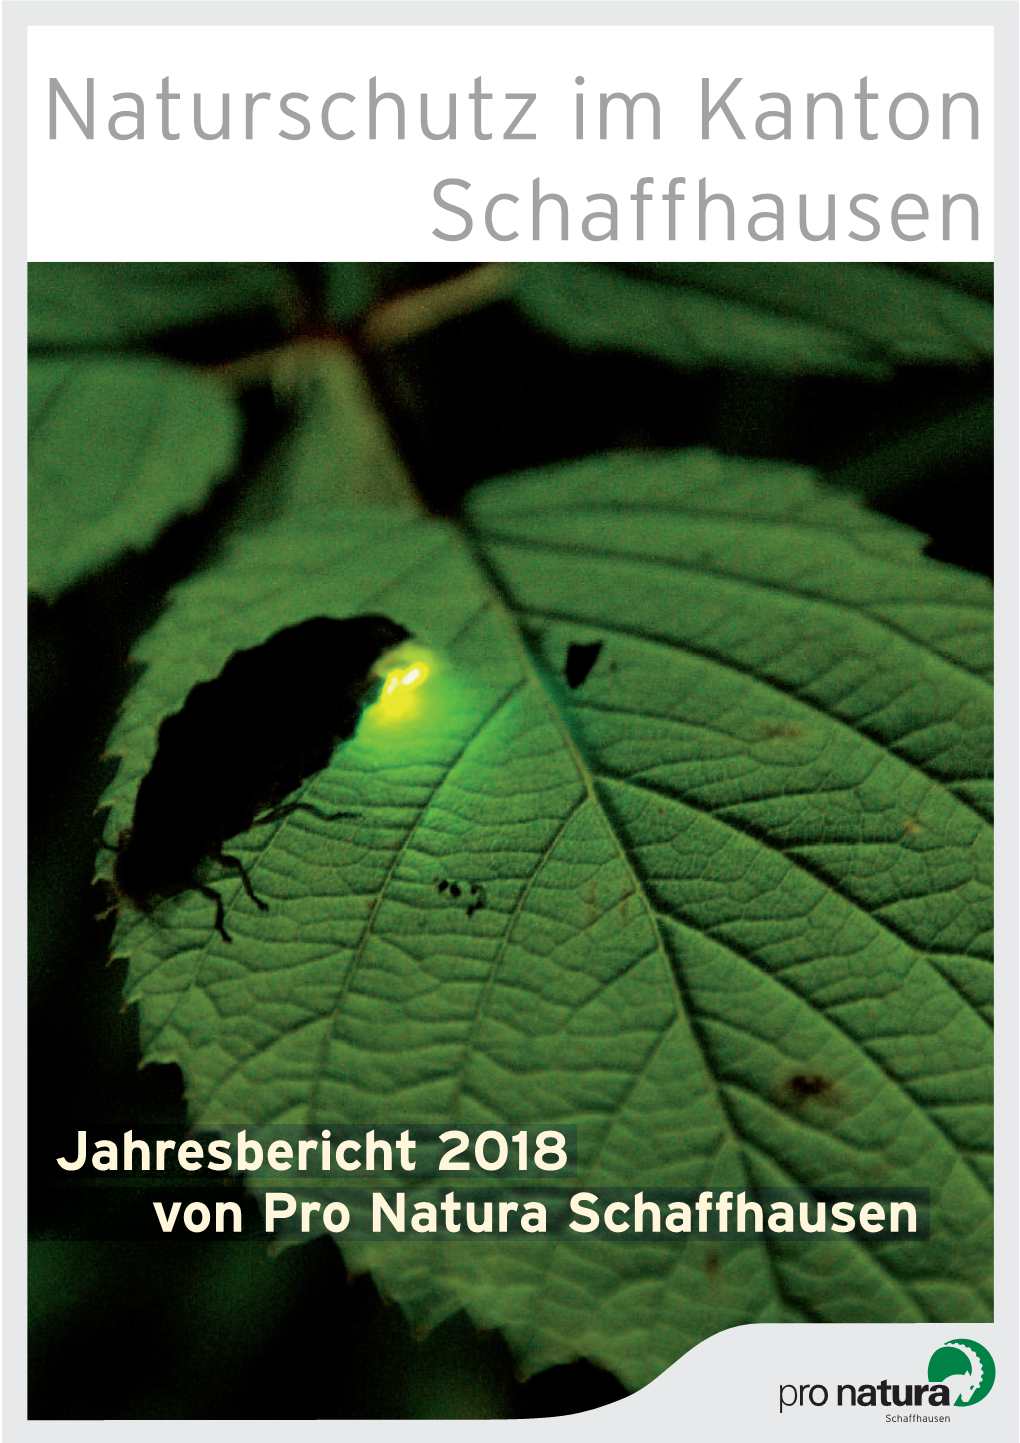 Schaffhausen Naturschutz Im Kanton